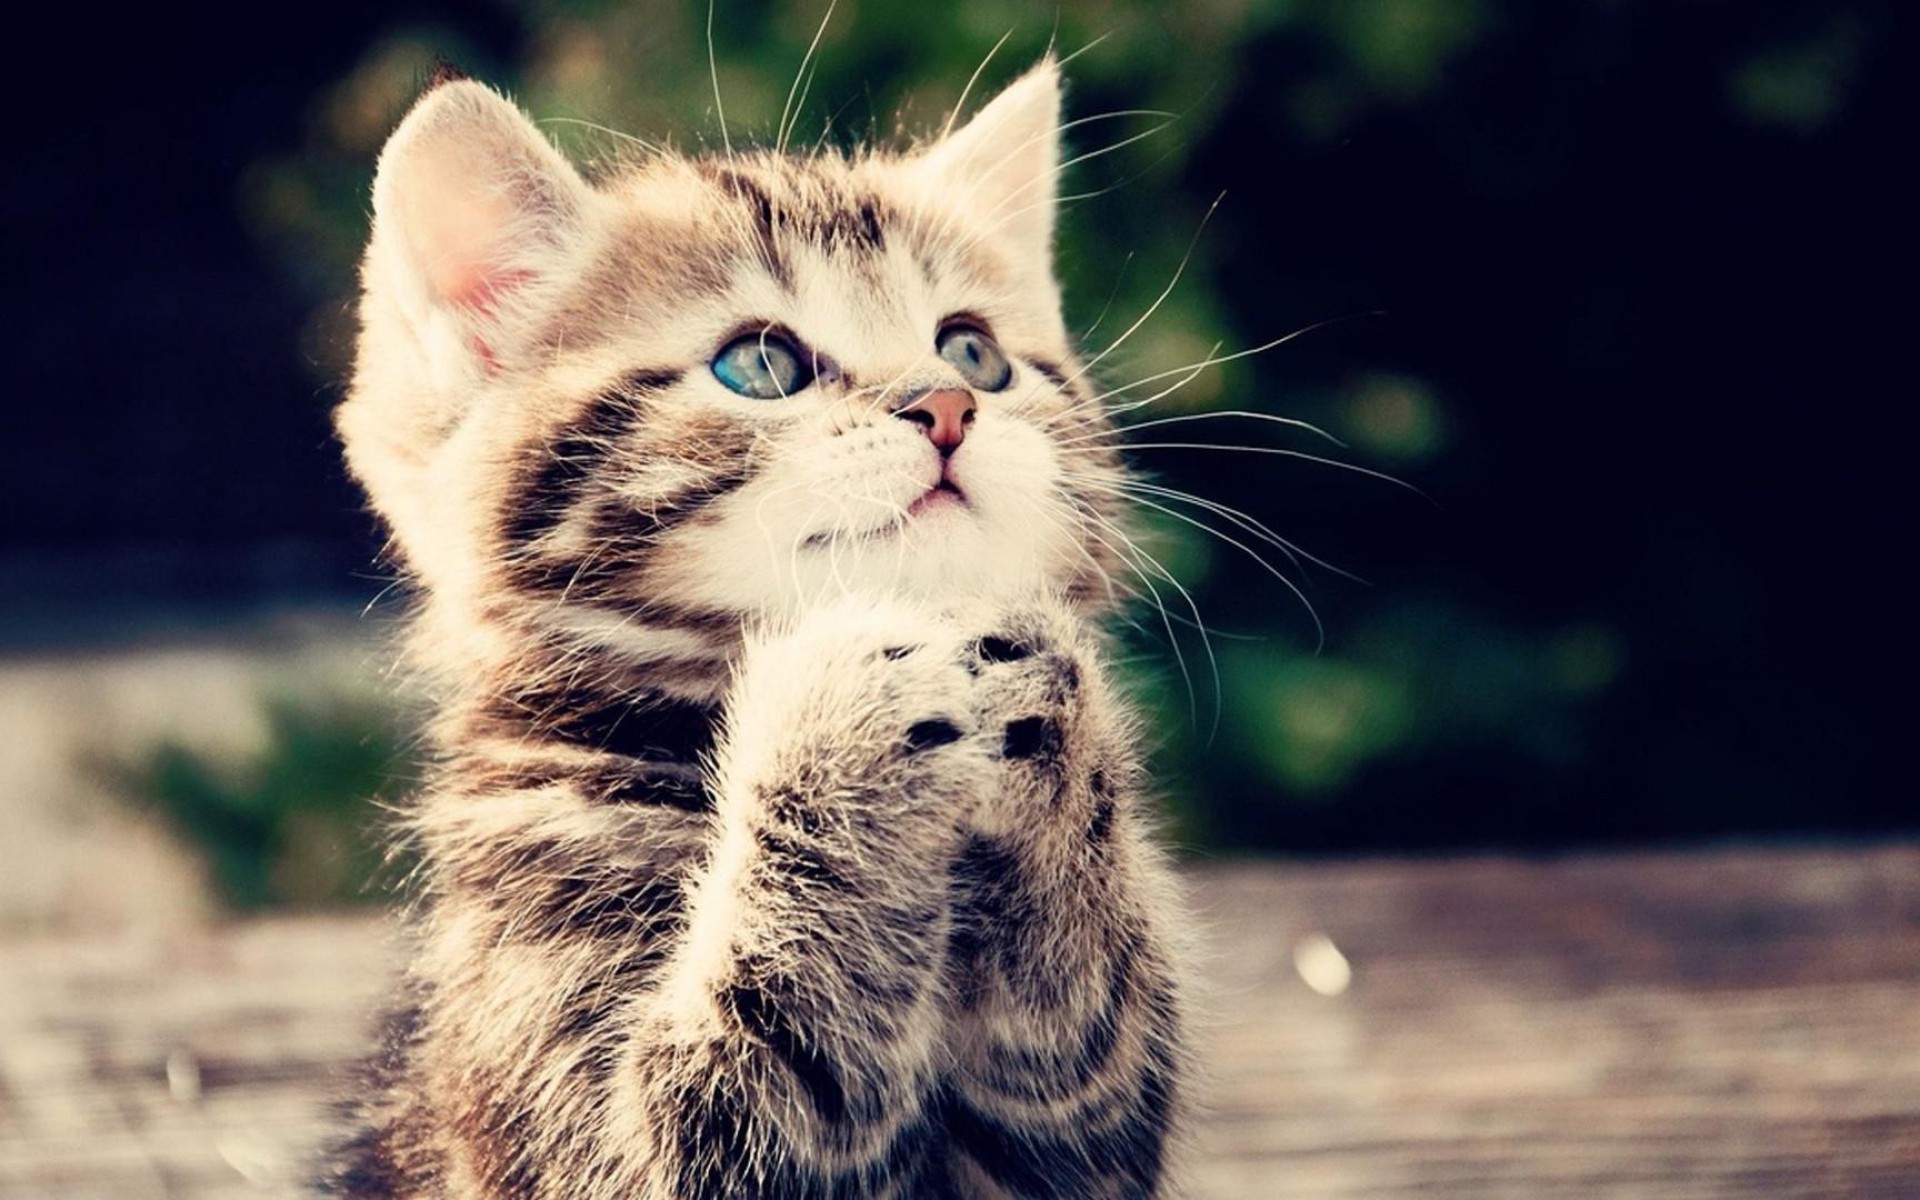 animals-cat-kitten-cute-begging-kitten-wallpaper | GCC Creative Writing